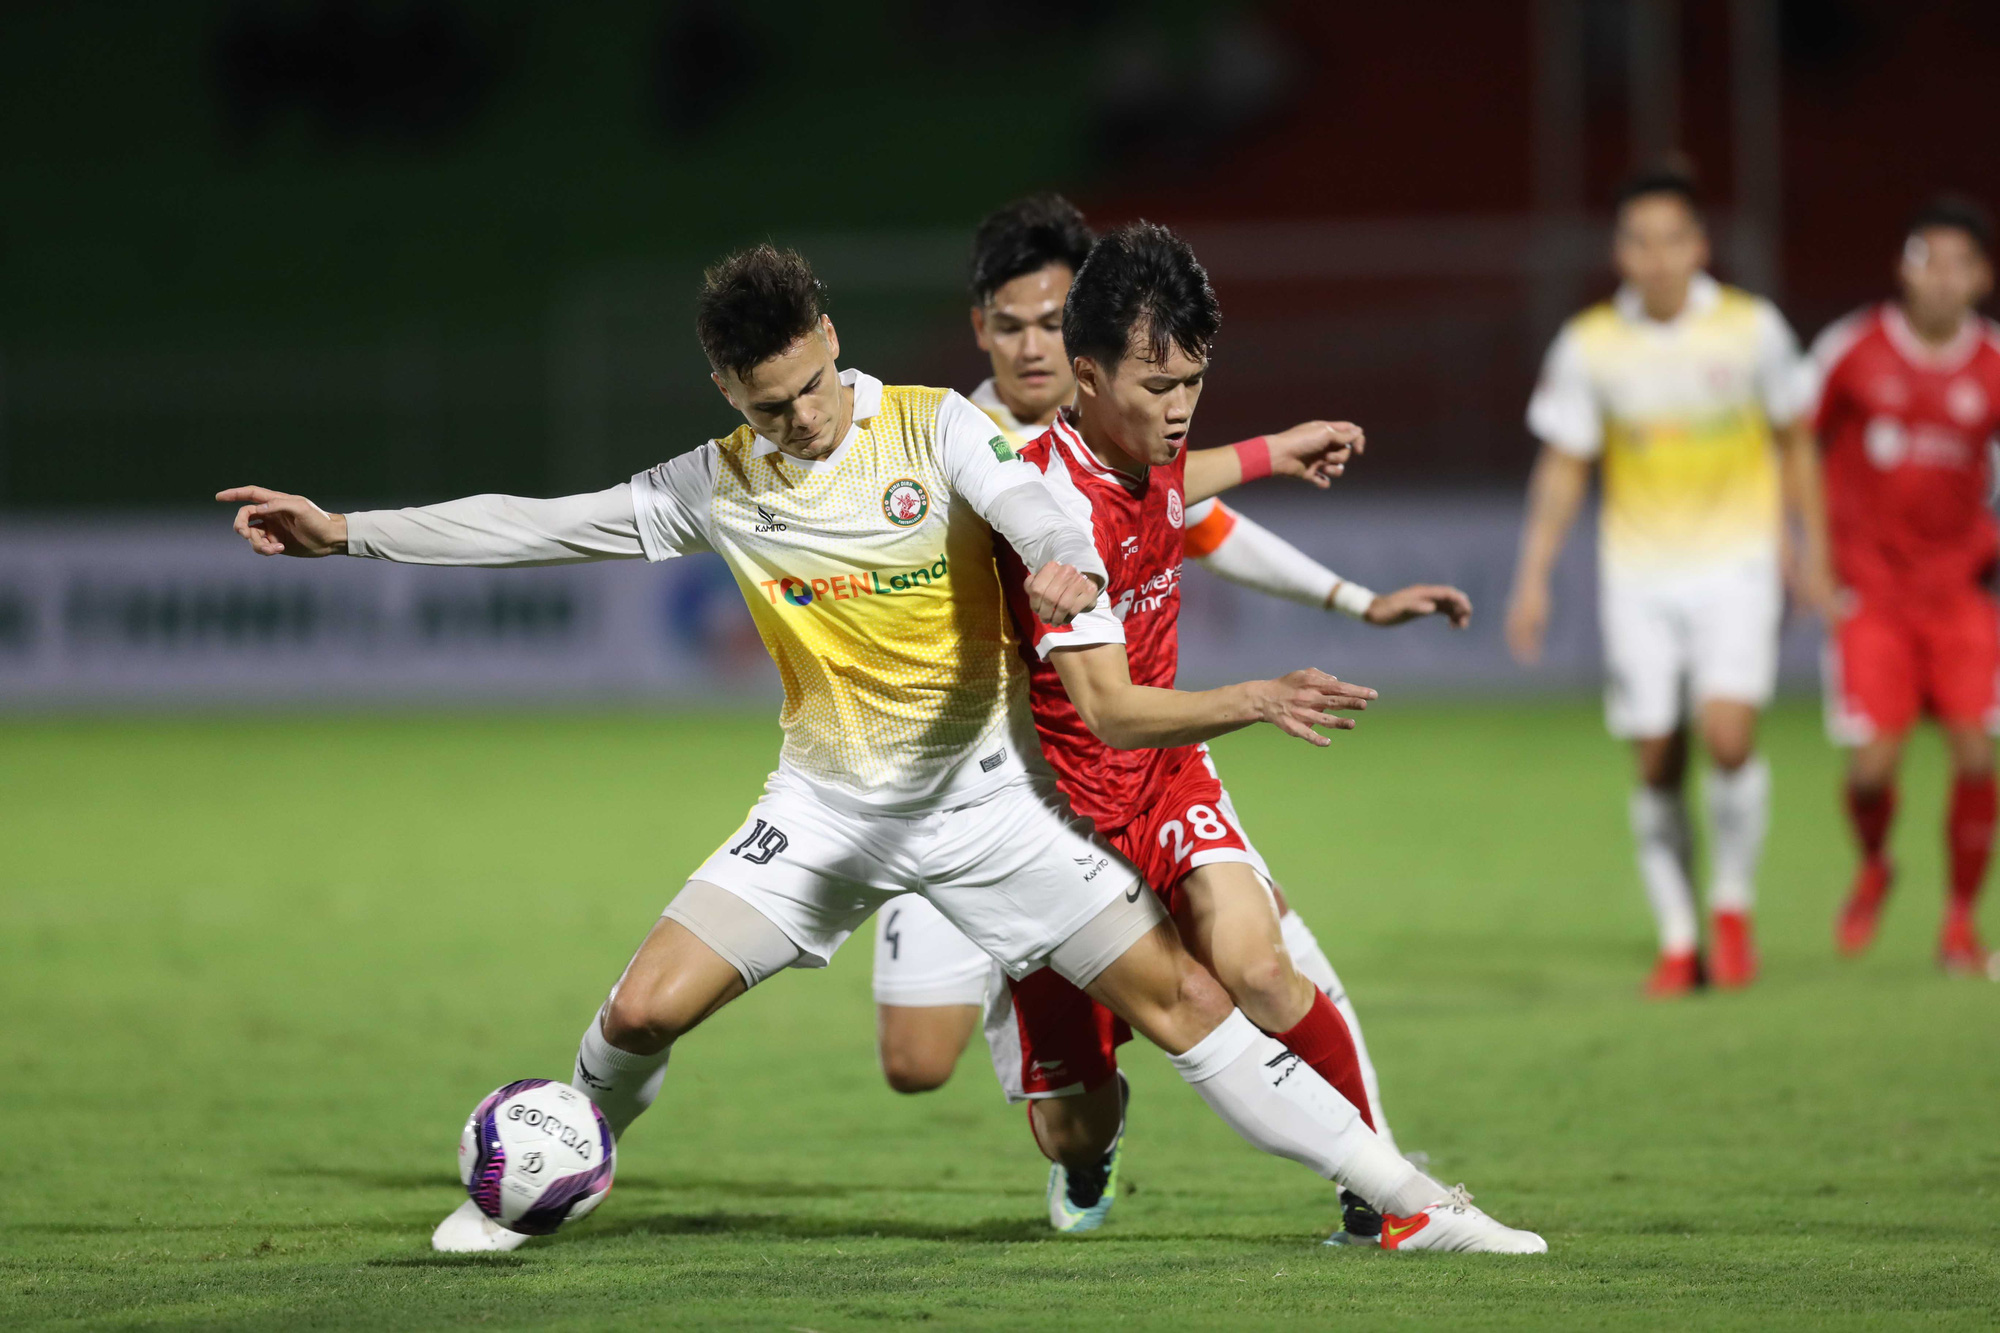 ĐT Việt Nam đấu Oman, Nhật Bản: HLV Park Hang-seo gọi cầu thủ Việt kiều - Ảnh 2.